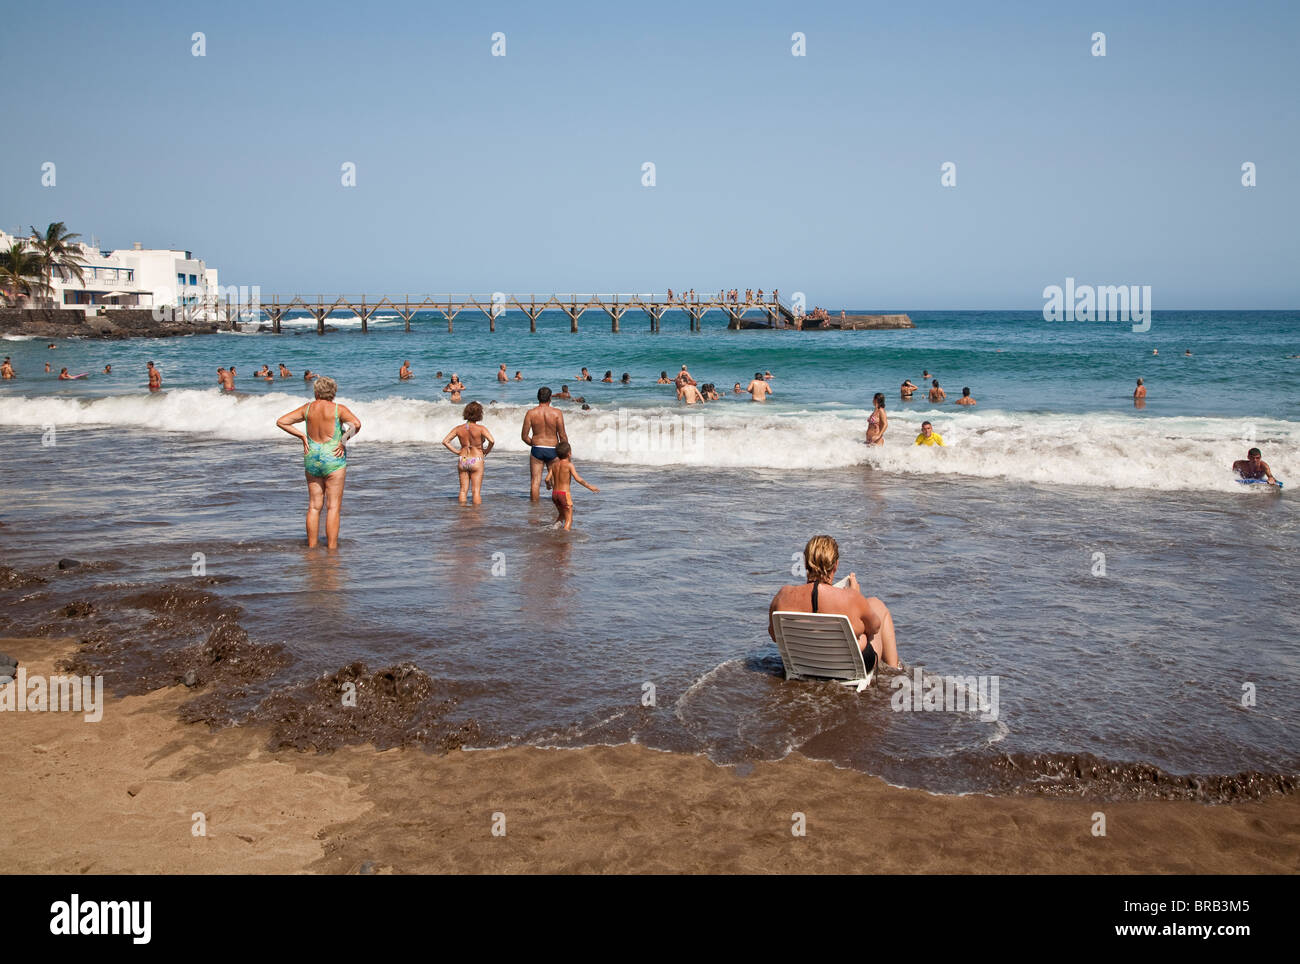 Sunbathing, paddling, swimming and surfing on Playa Garita beach, Arrieta, Lanzarote Stock Photo